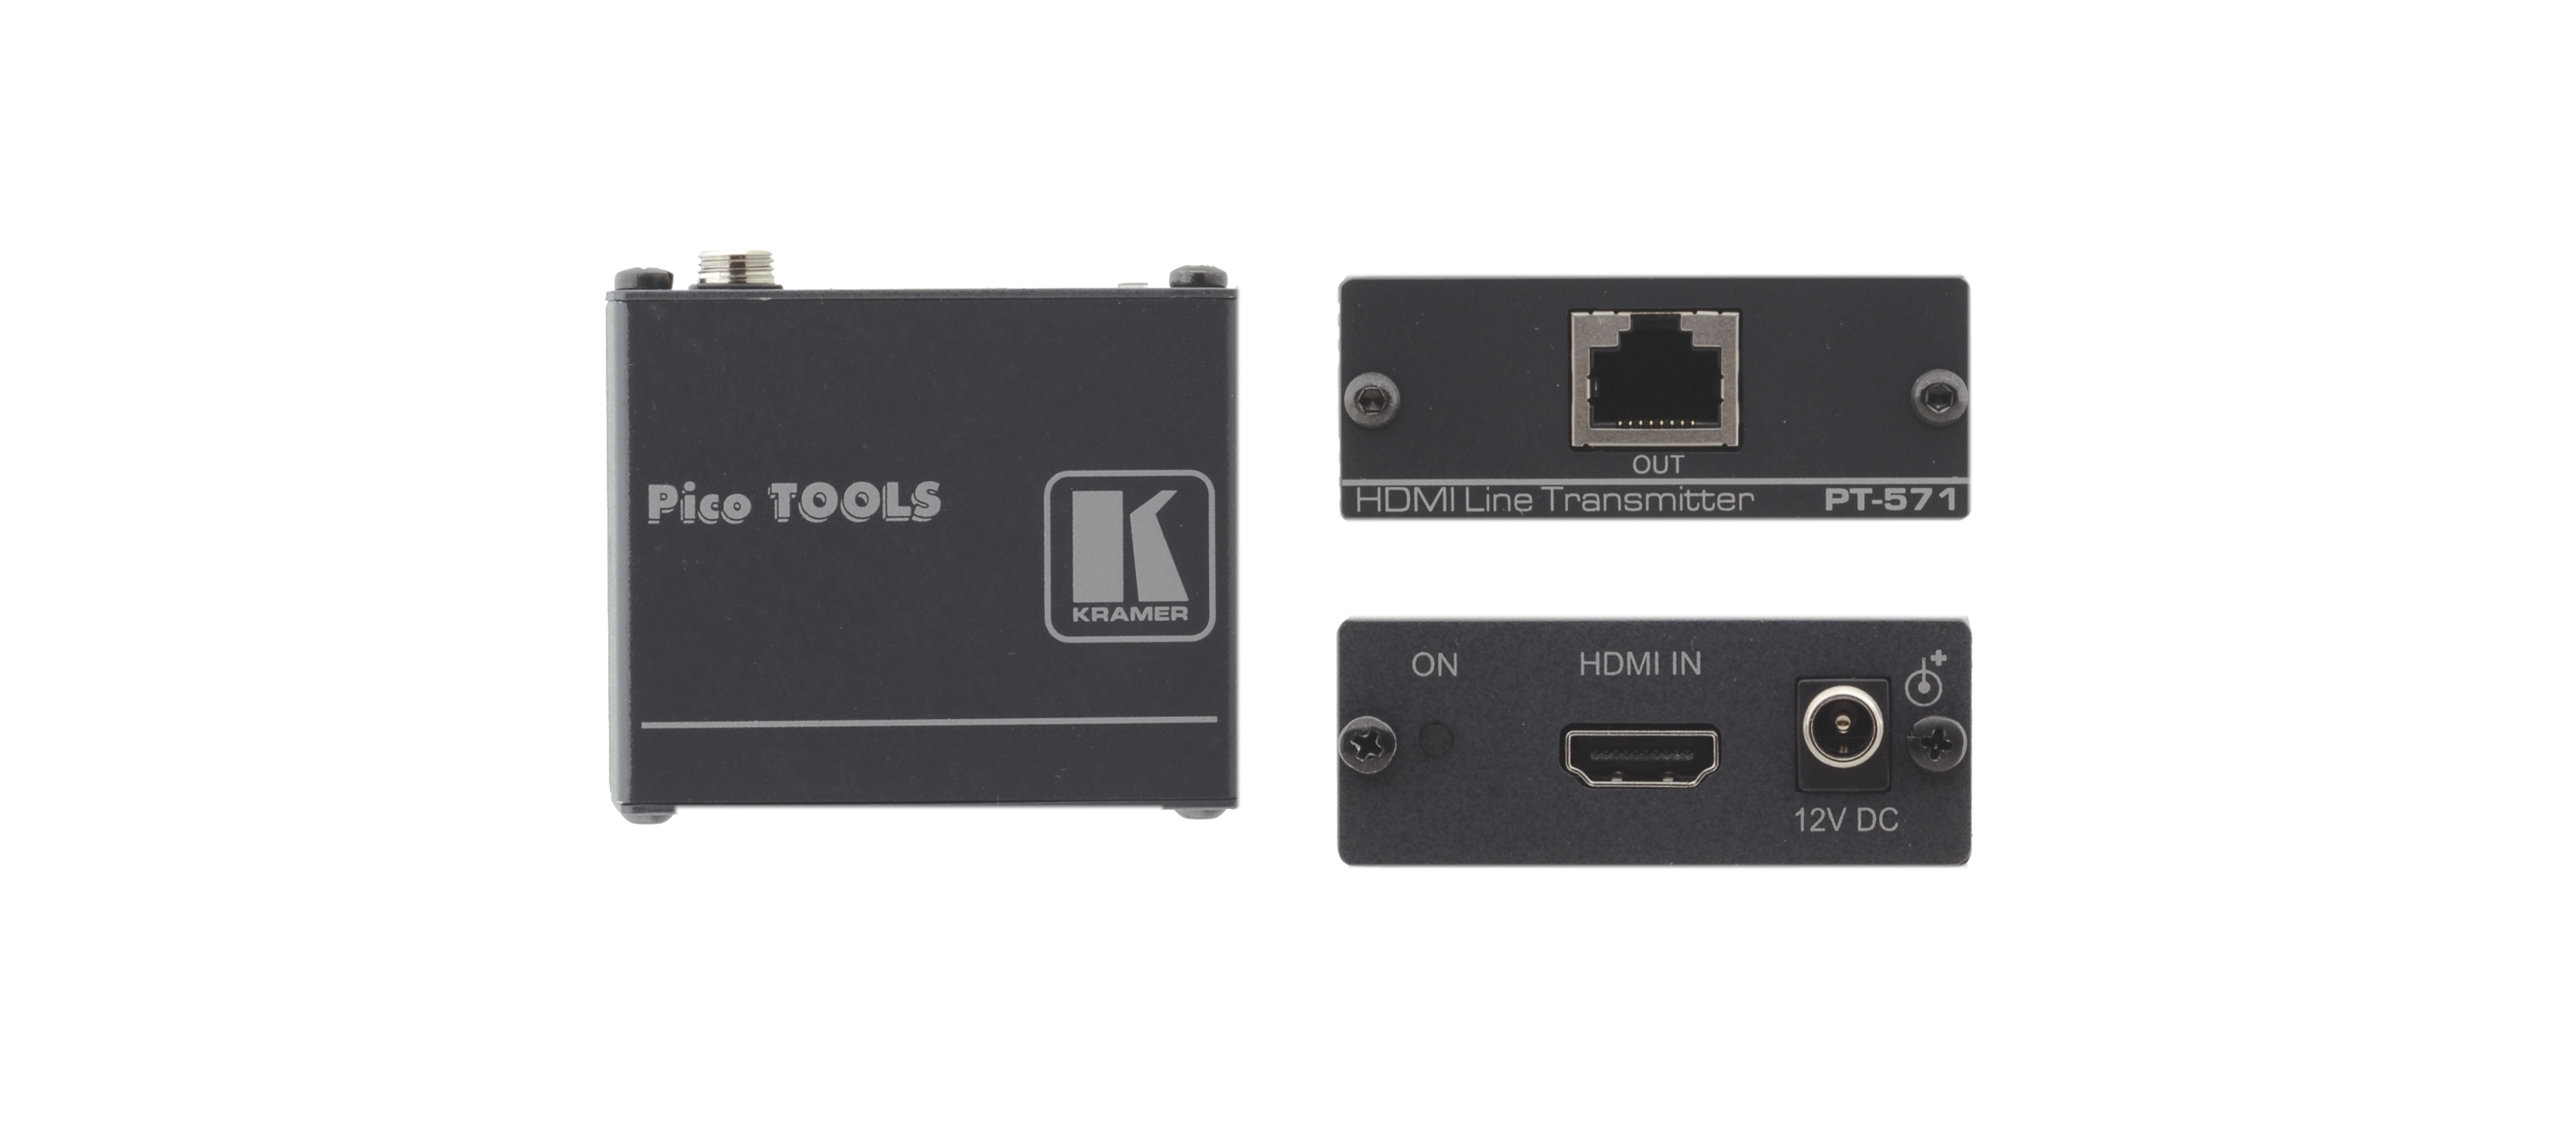 Передатчик Kramer PT-571 сигнала HDMI в кабель витой пары (TP), поддержка HDCP и HDMI 1.3, совместимость с HDTV, Power Connect, 1.65Gbps 90-70832090